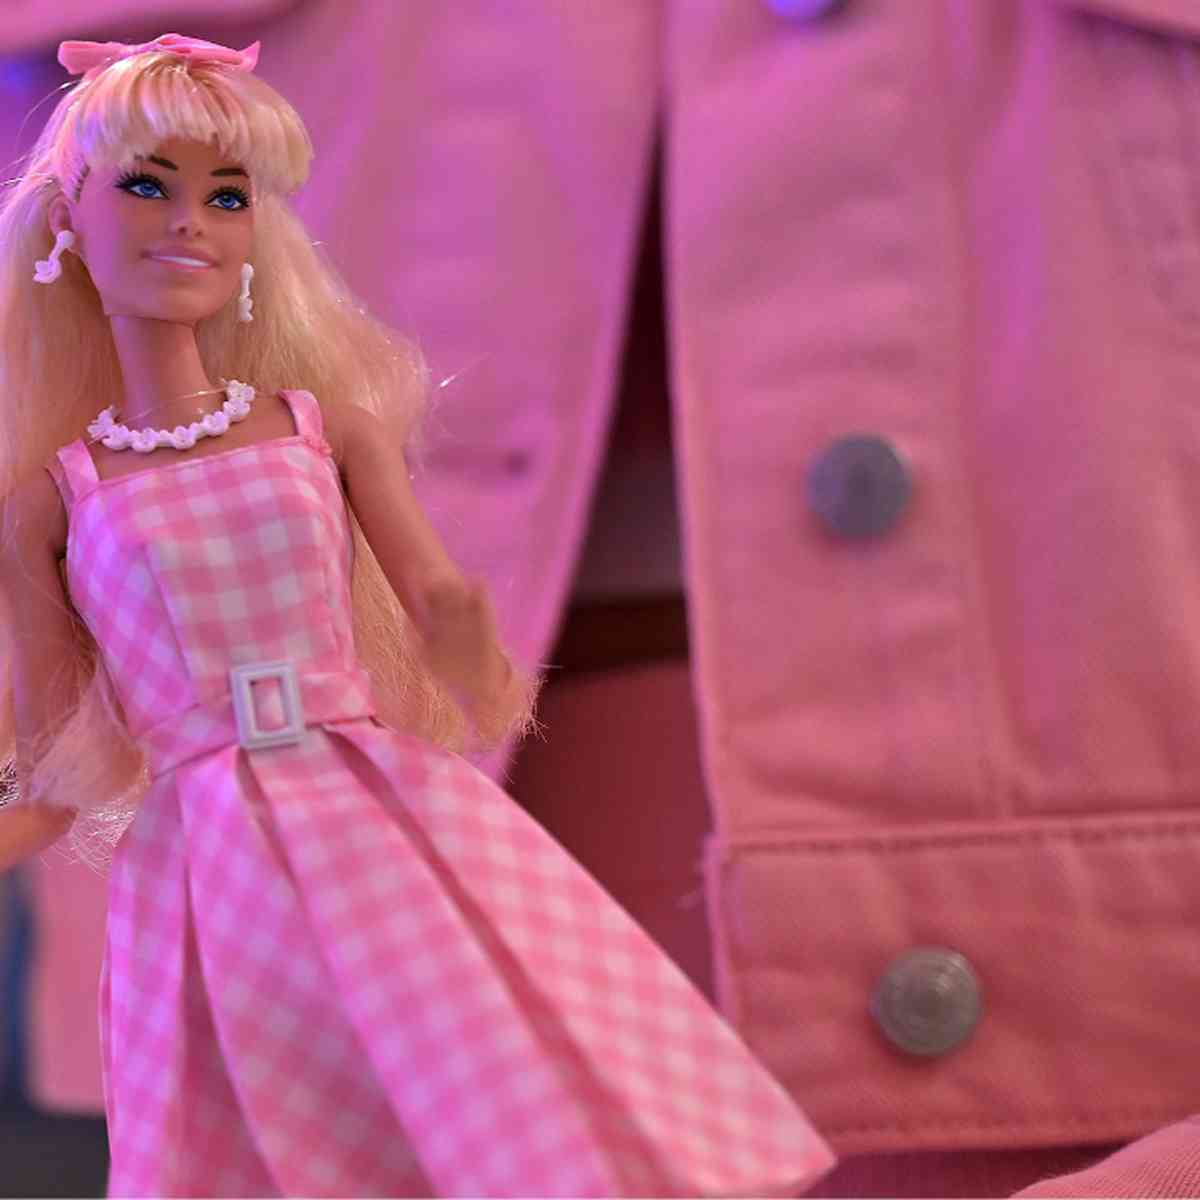 Jogos da Barbie Grávida Online